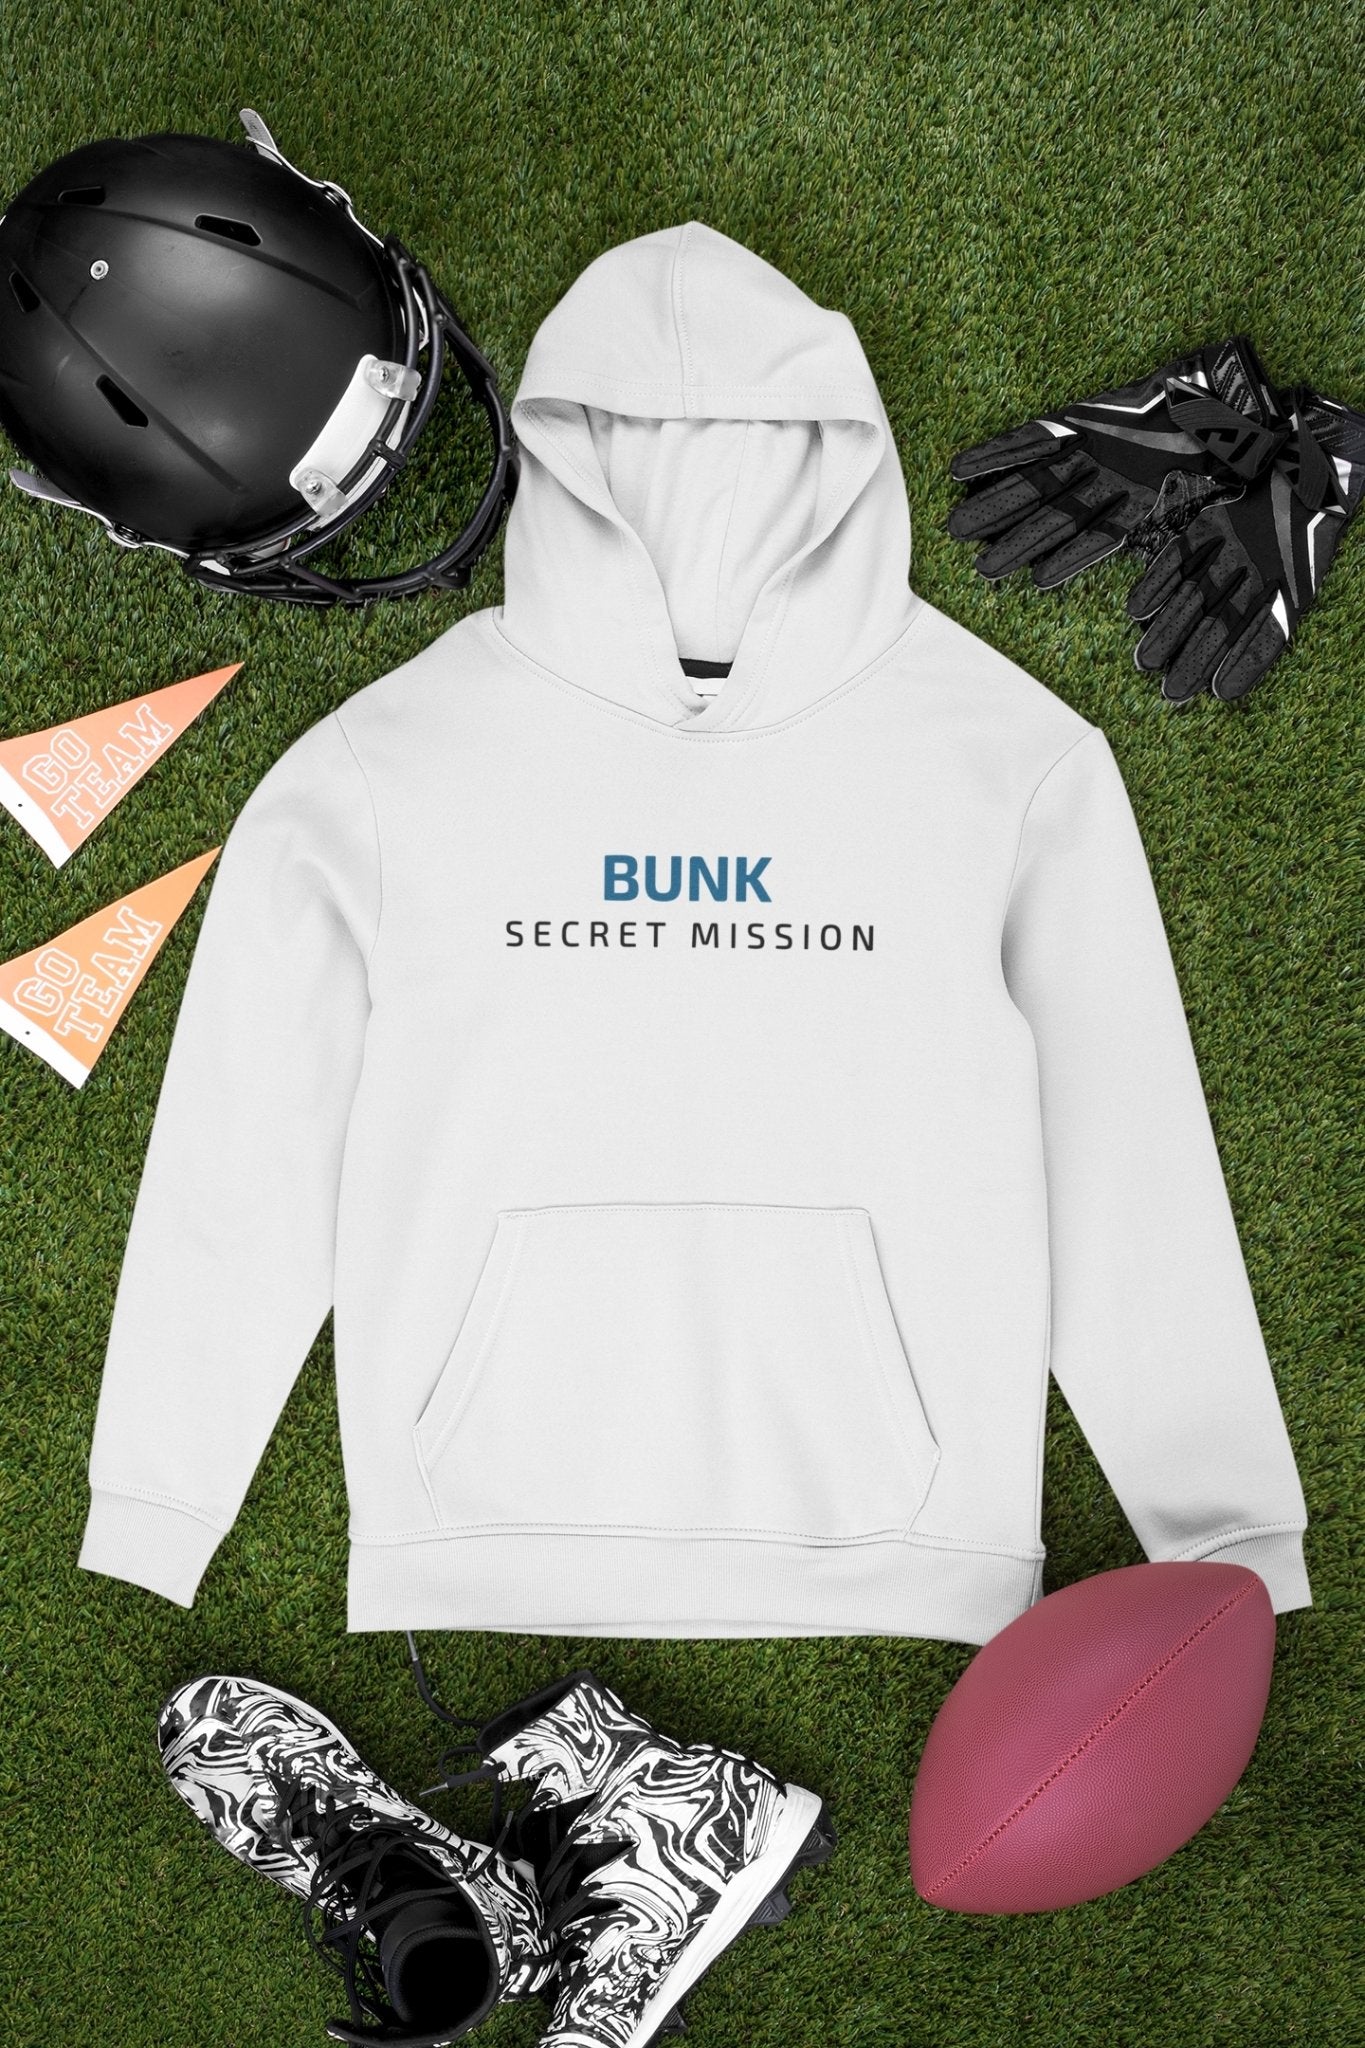 Bunk Secret Mission Typography Men Hoodies-FunkyTeesClub - Funky Tees Club